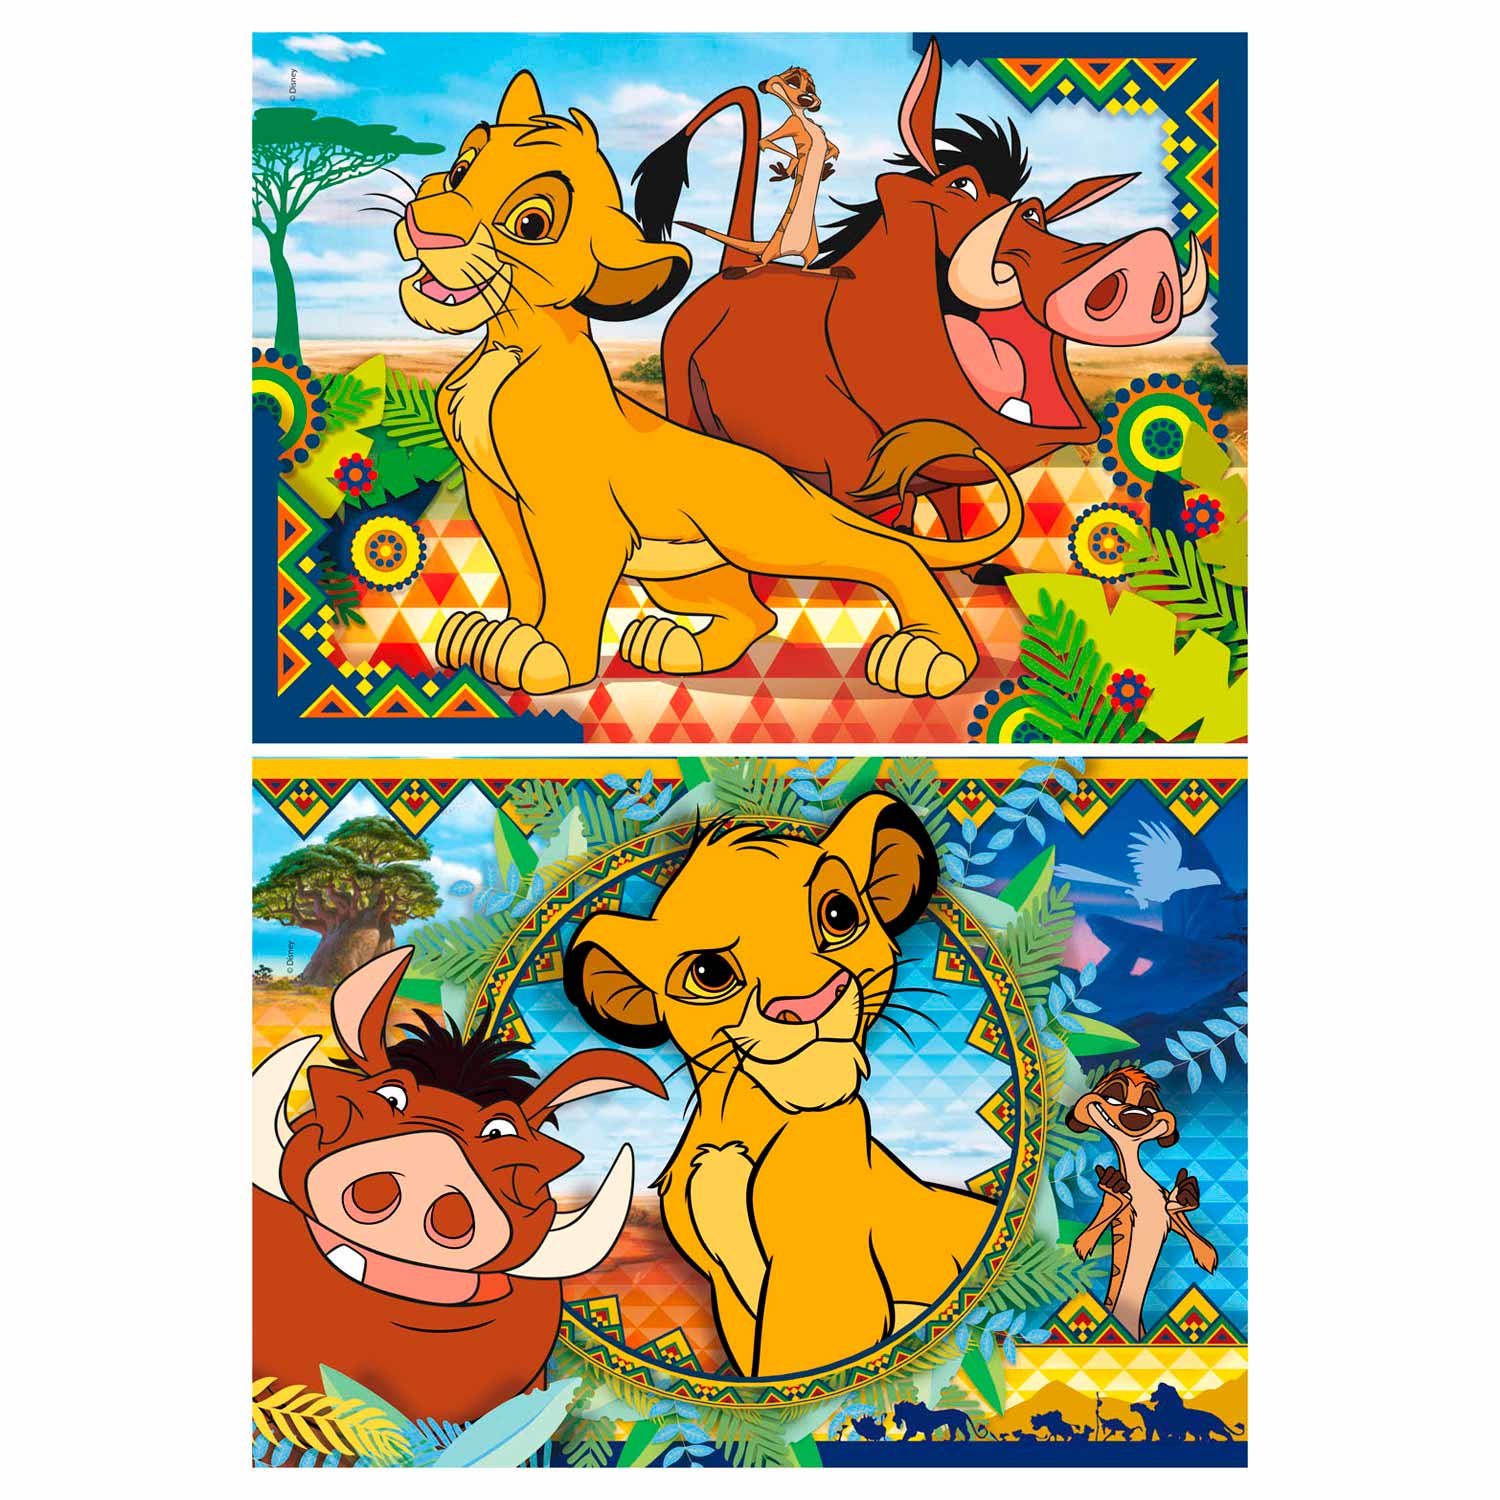 Clementoni Puzzle Le Roi Lion, 2x60pcs.